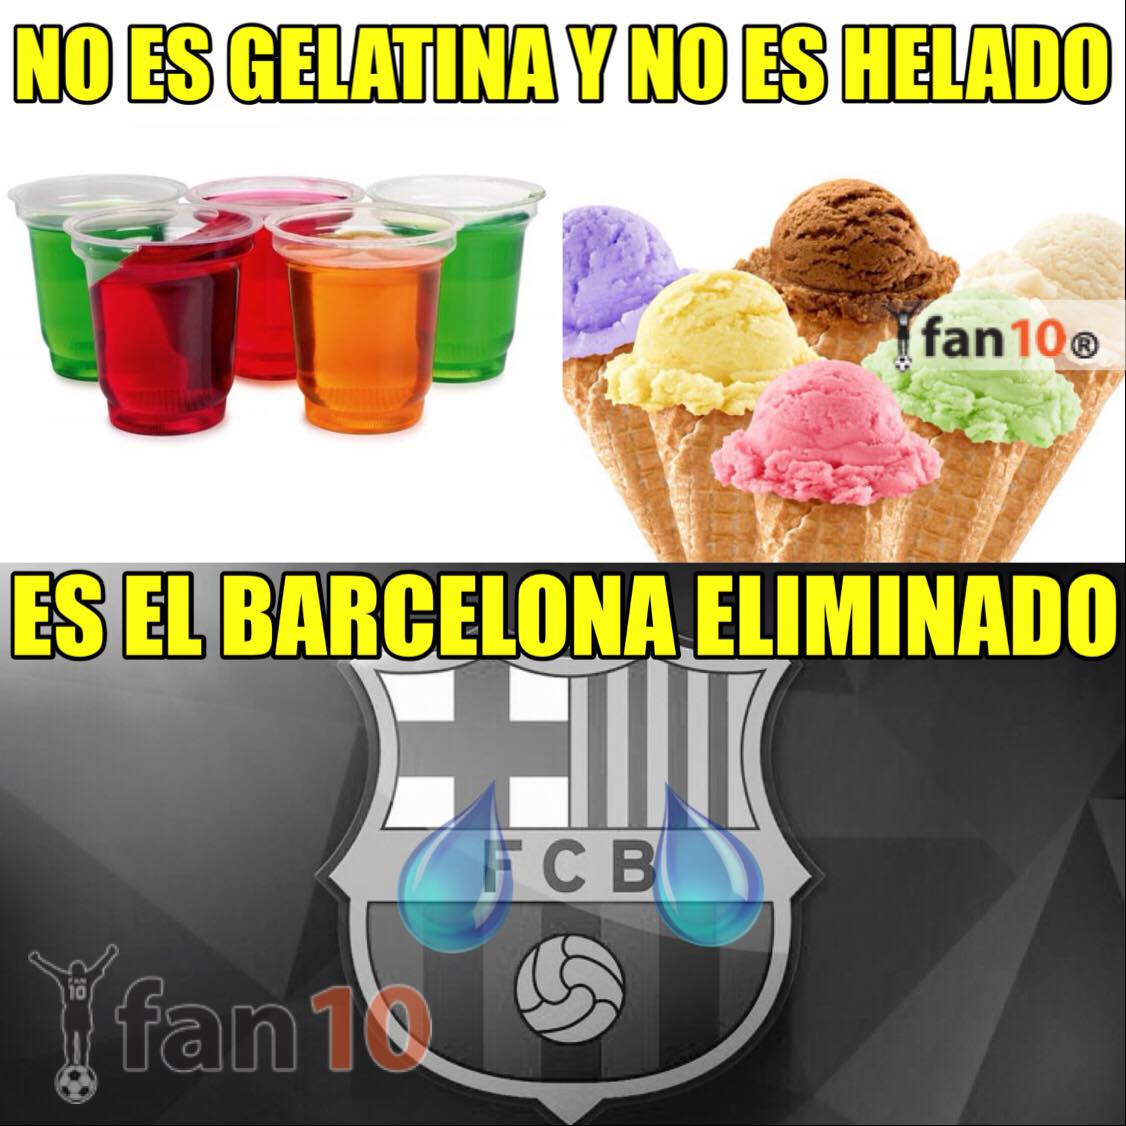 La eliminación del FC Barcelona se adueña de los memes 6